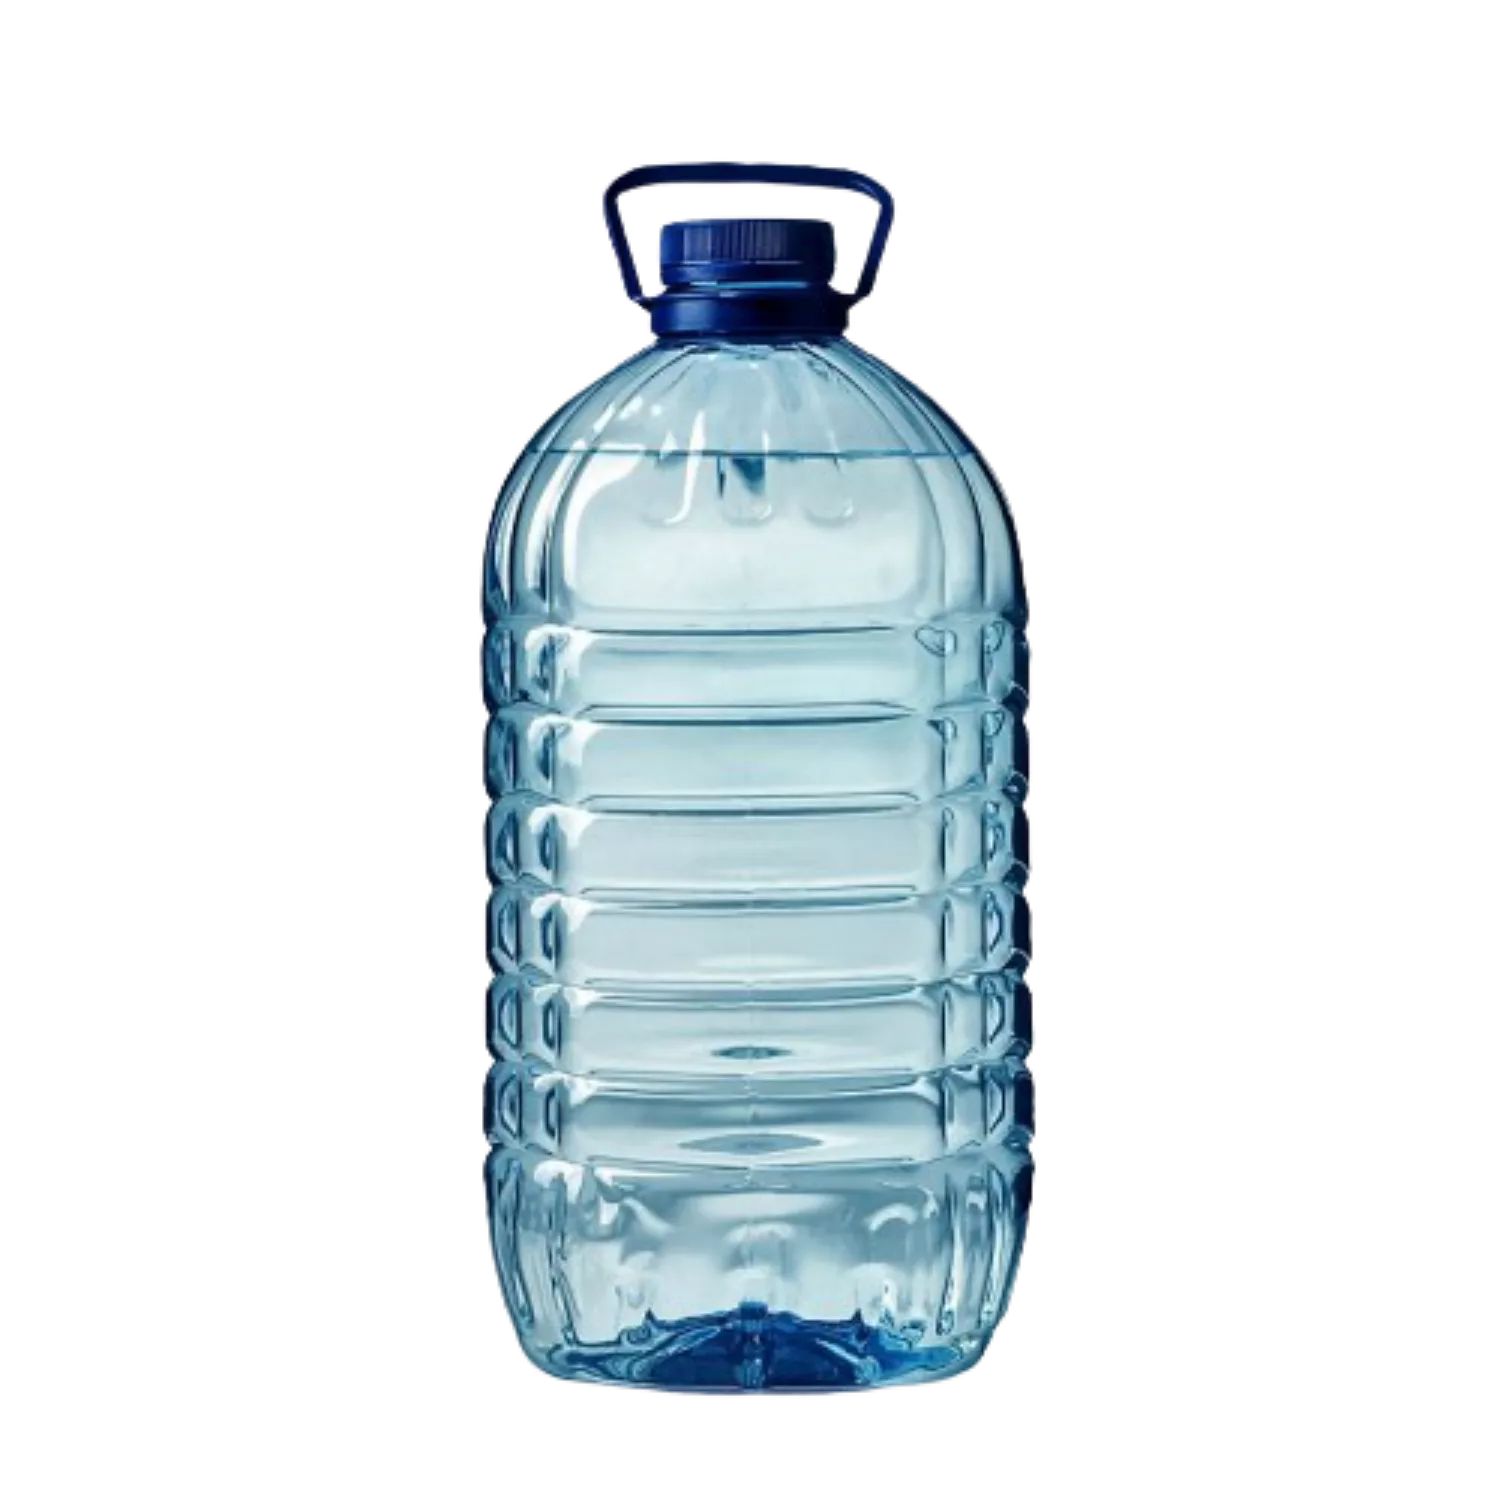 Прят 5 л 6 сь. ПЭТ вода 5л 10л 19л. Бутыль для воды 5 л. Бутыль 6 литров. Бутылка воды 5 литров.